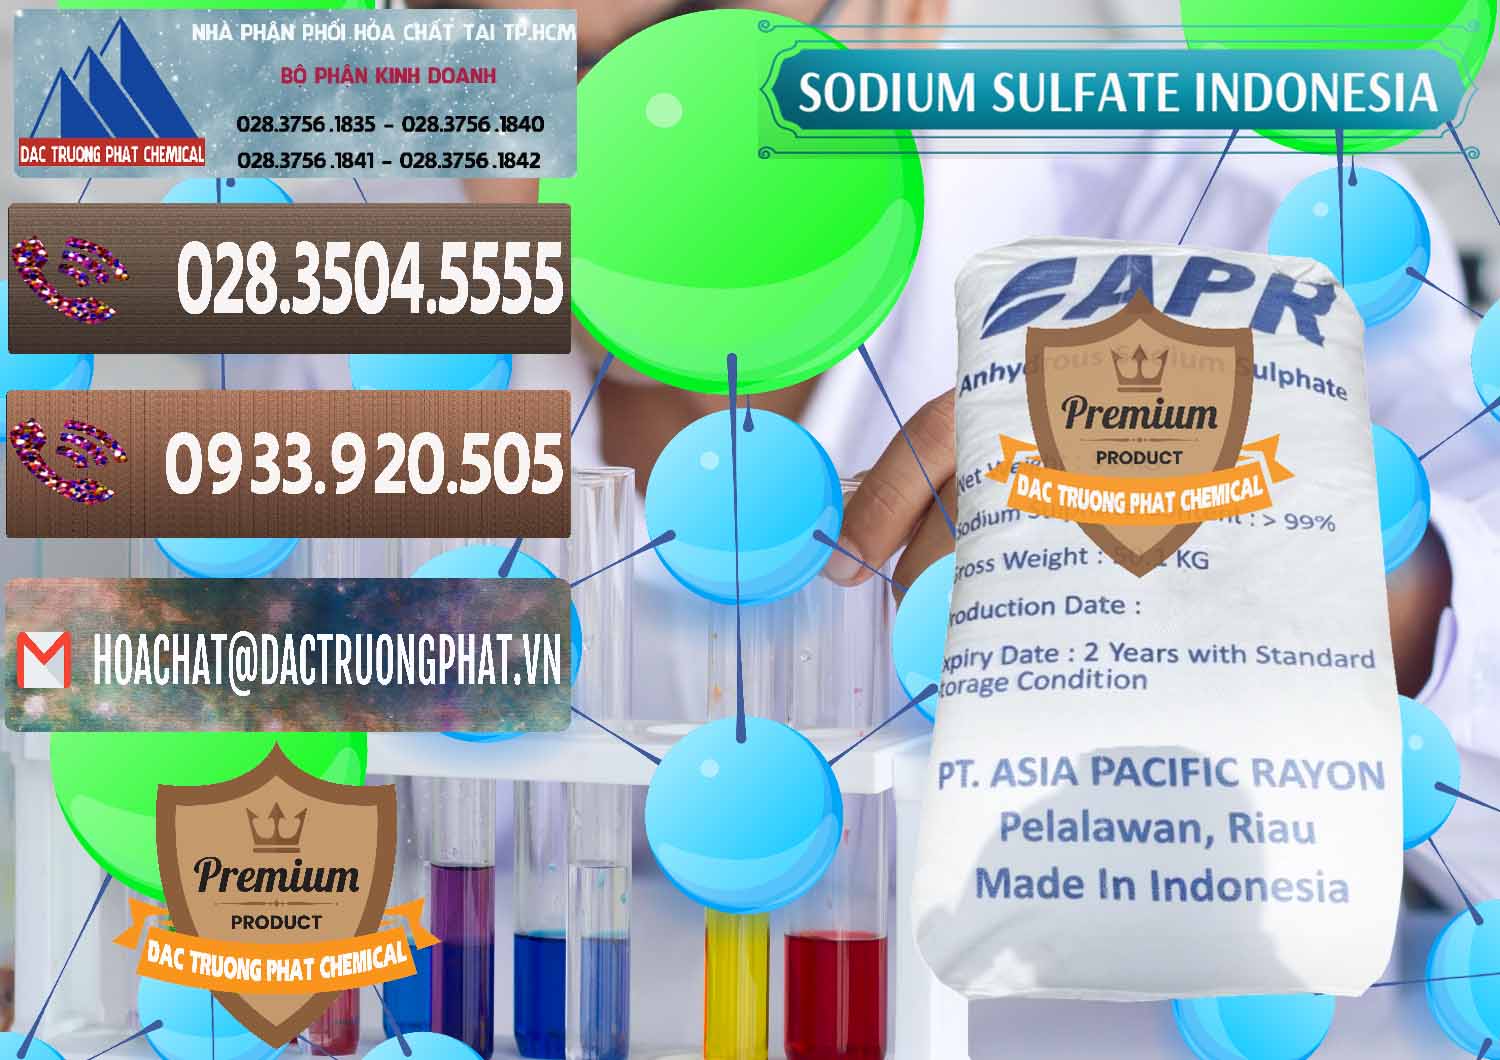 Nơi bán & cung ứng Sodium Sulphate - Muối Sunfat Na2SO4 APR Indonesia - 0460 - Cty cung cấp và nhập khẩu hóa chất tại TP.HCM - hoachatviet.net